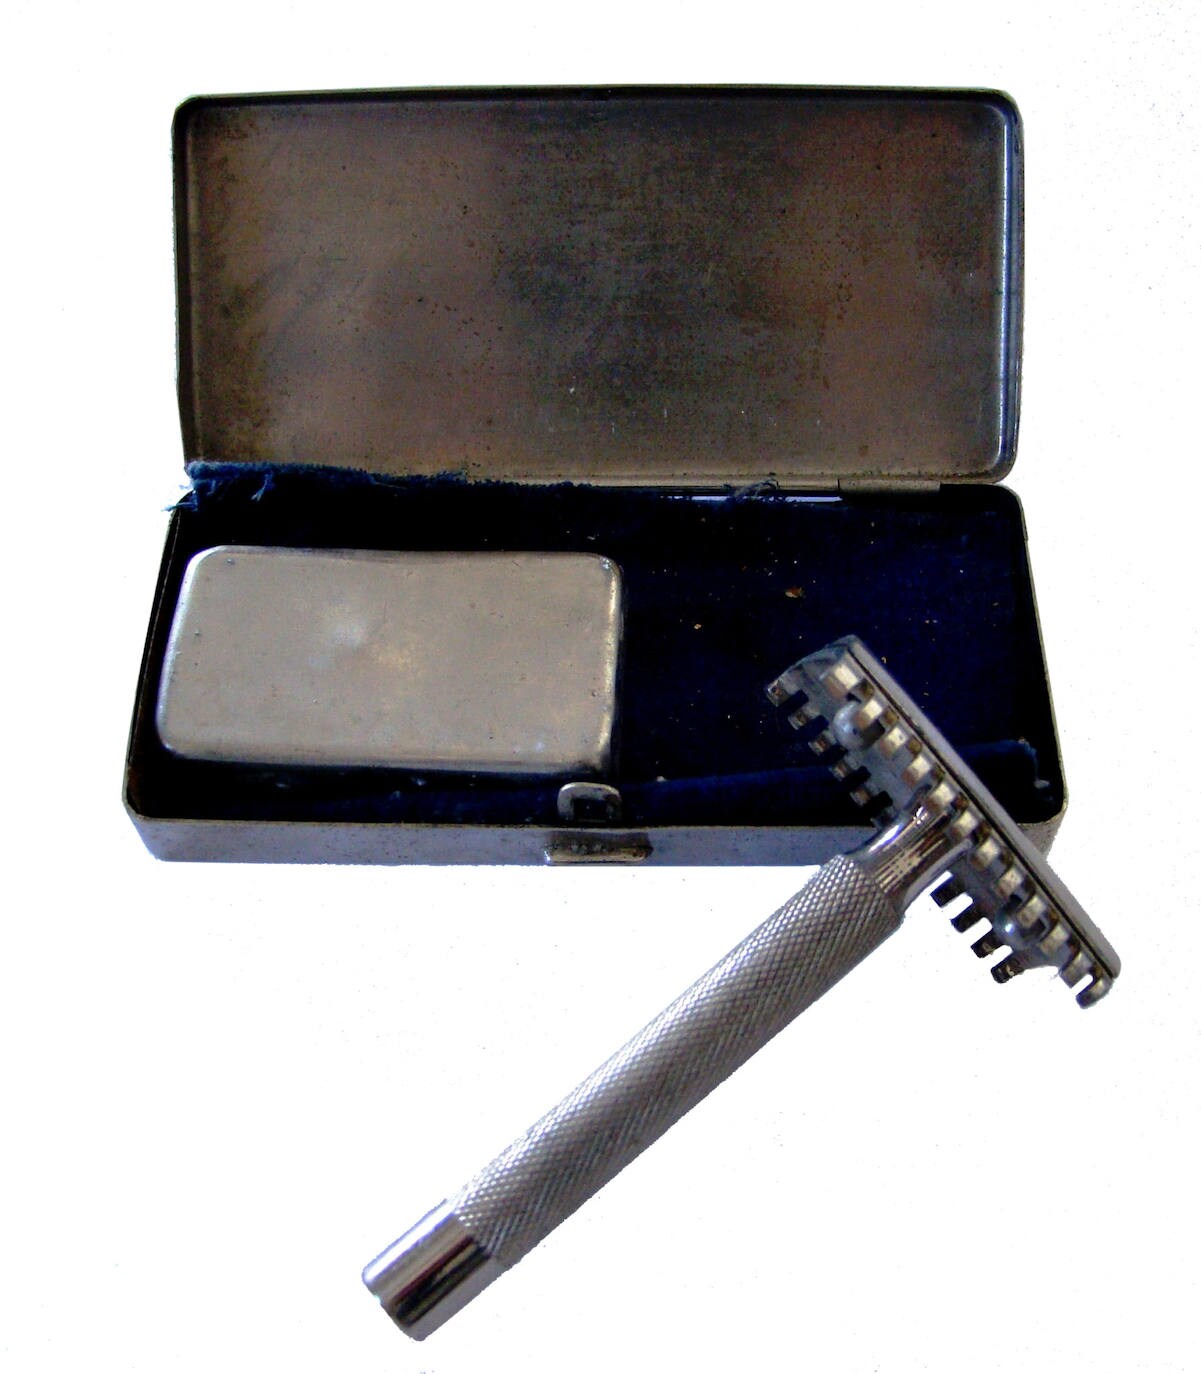 Una afeitadora de los años 40, pieza del mes de septiembre 2020 en el Museo de Olivenza